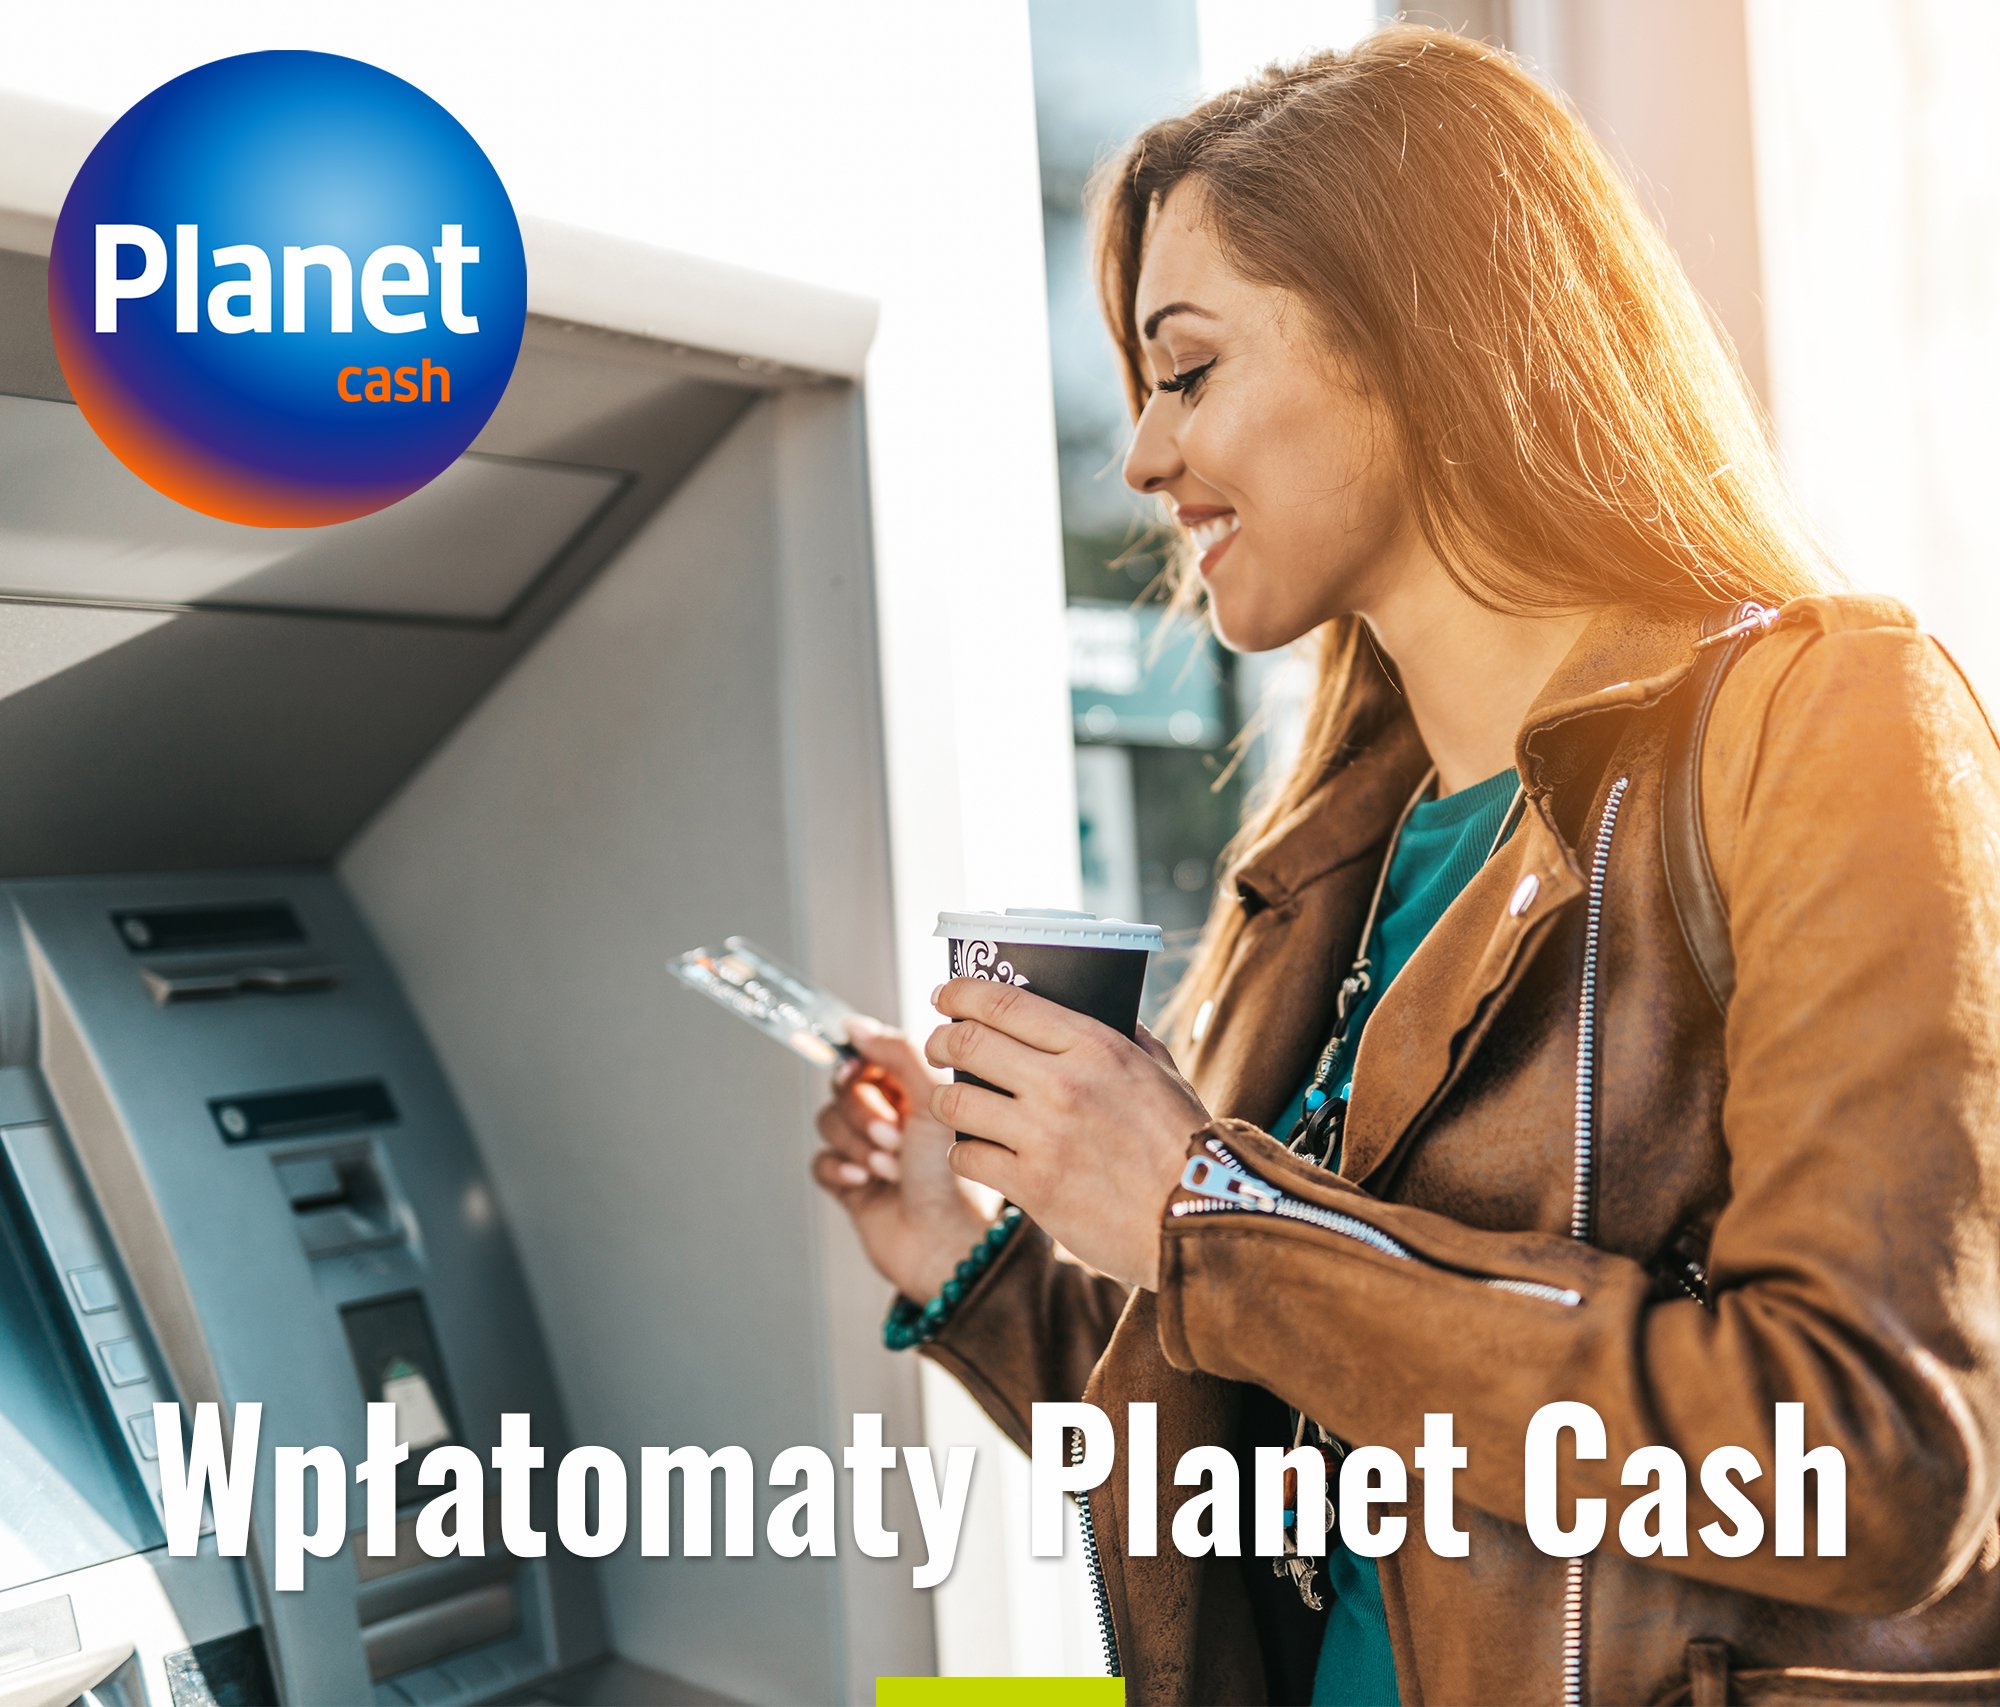 Wpłatomaty Planet Cash dostępne dla Klientów naszego Banku